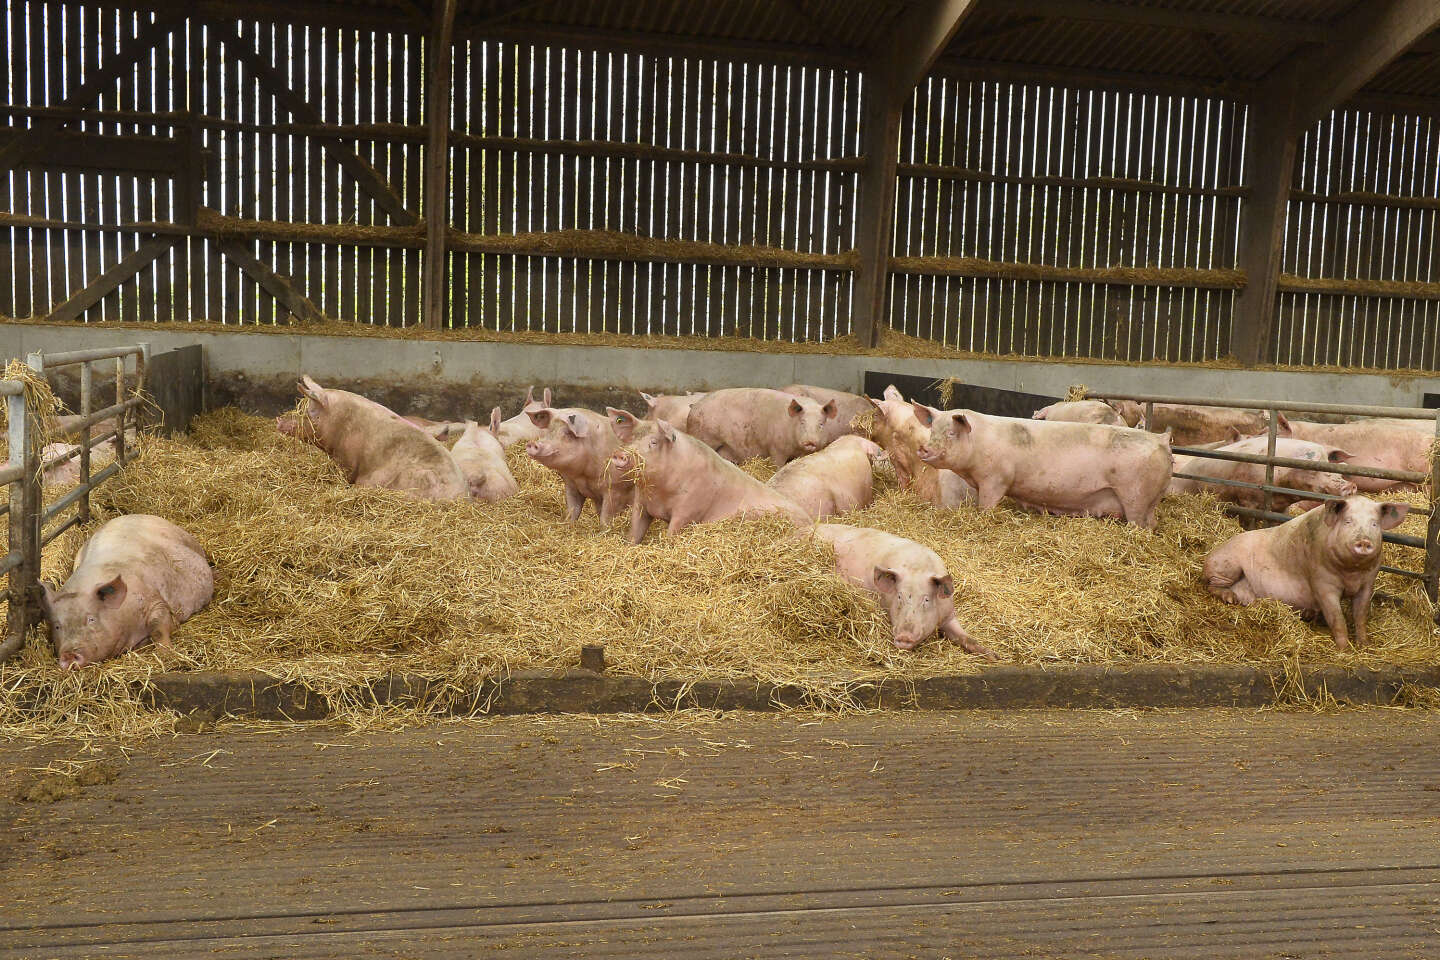 En Bretagne, l’un des plus importants éleveurs de cochons jugé pour maltraitance